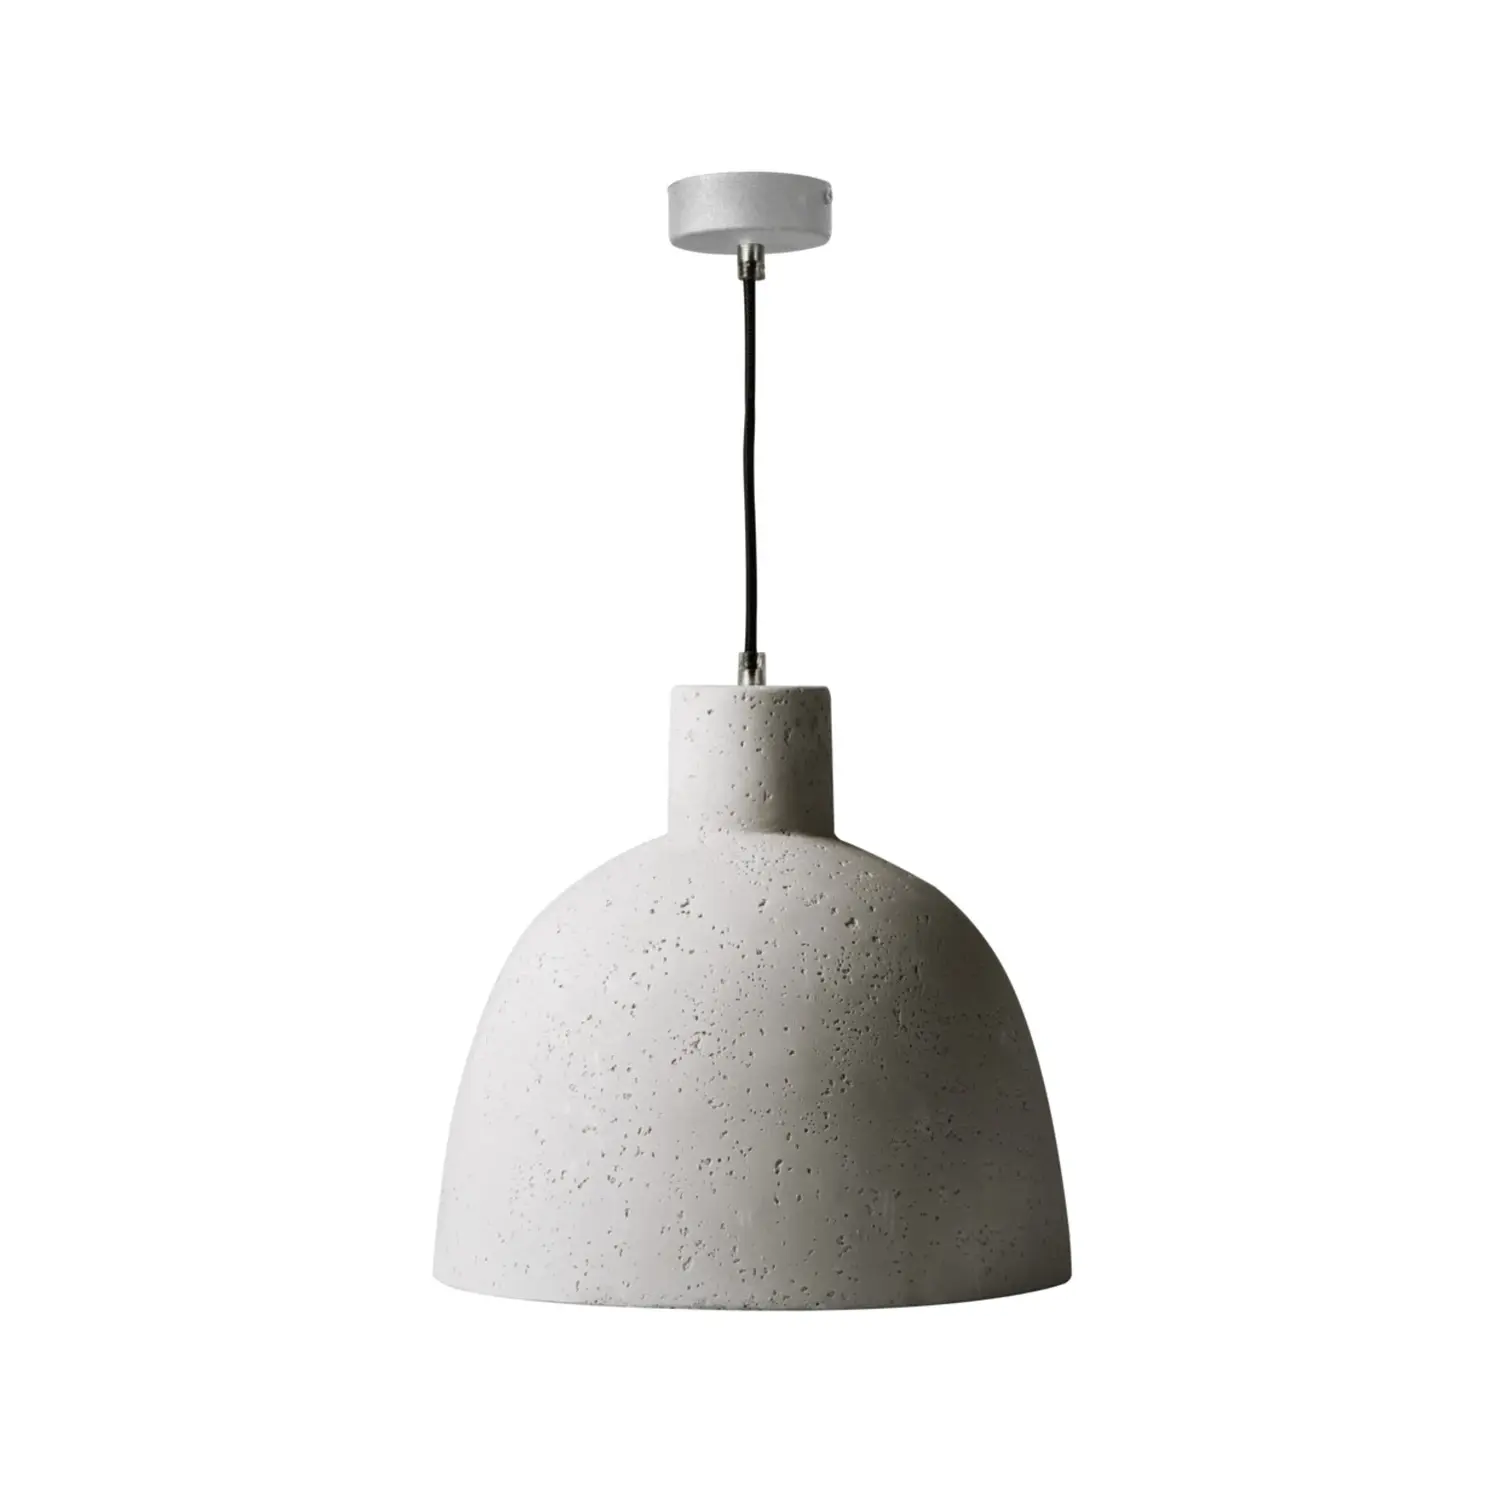 immagine del prodotto lampadario lampada a sospensione ogiva calcestruzzo e27 grigio